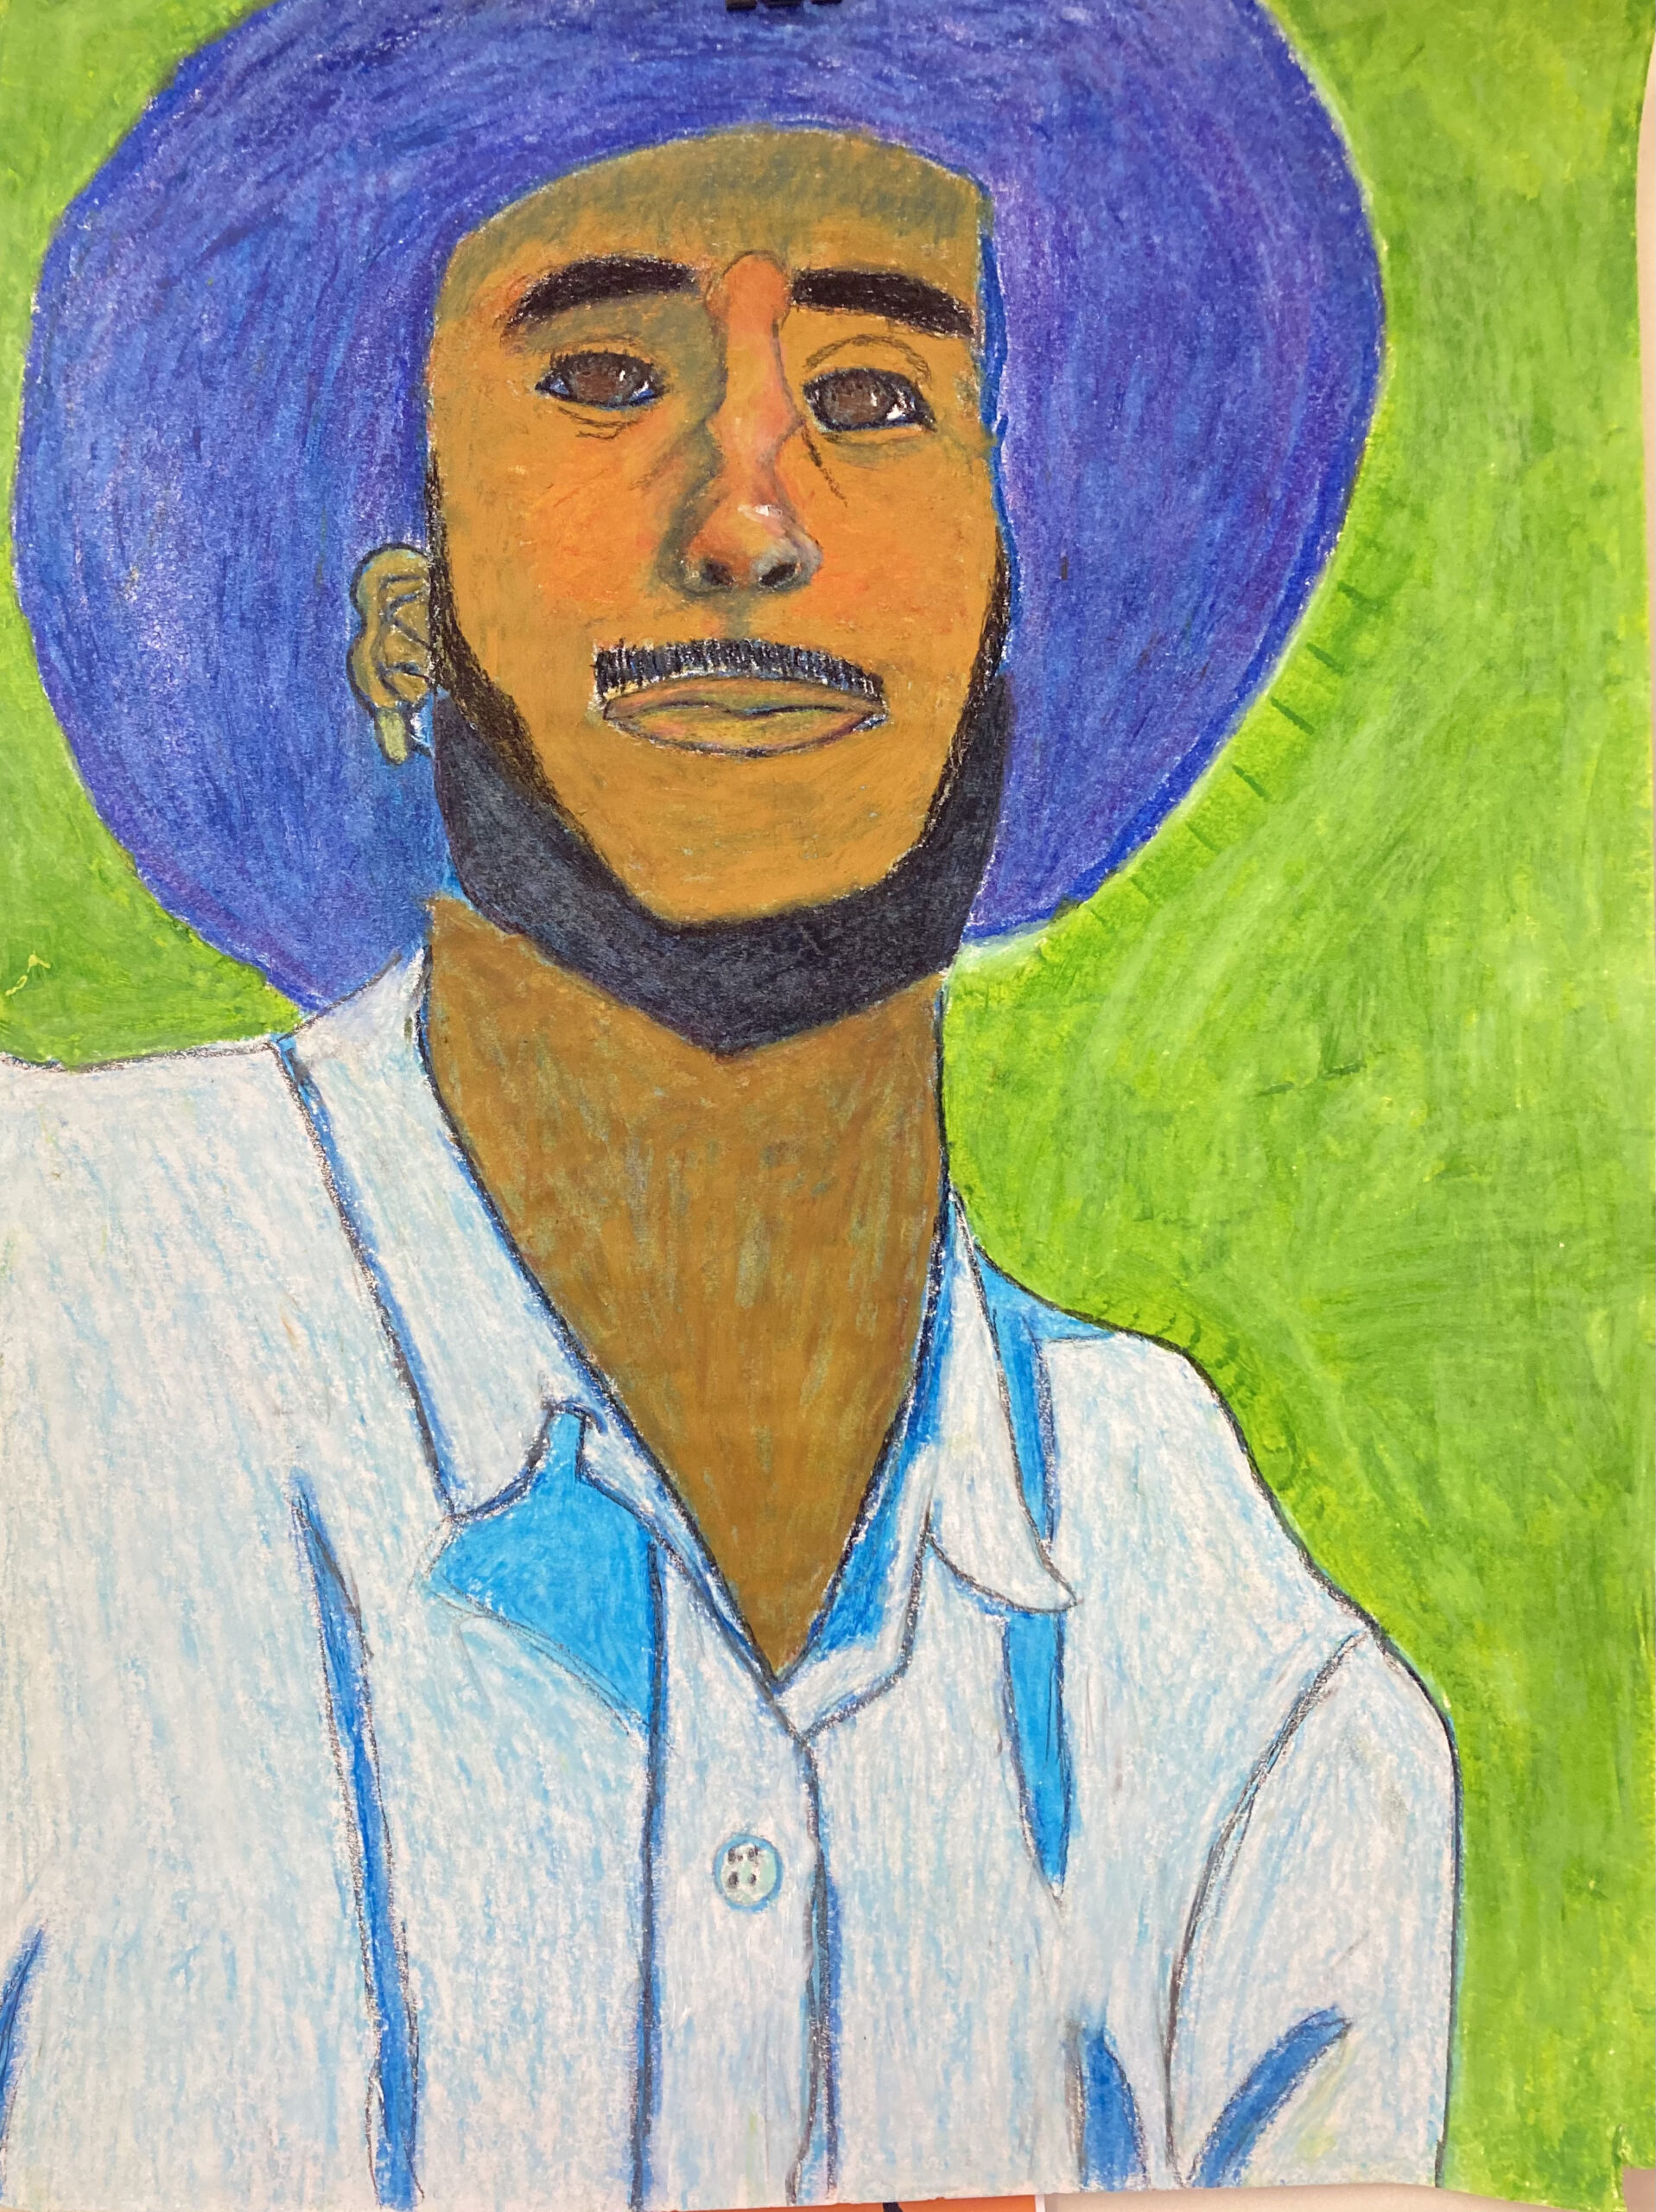 Self Portrait - Nigel Jones - Oil pastel on paper - 18x24